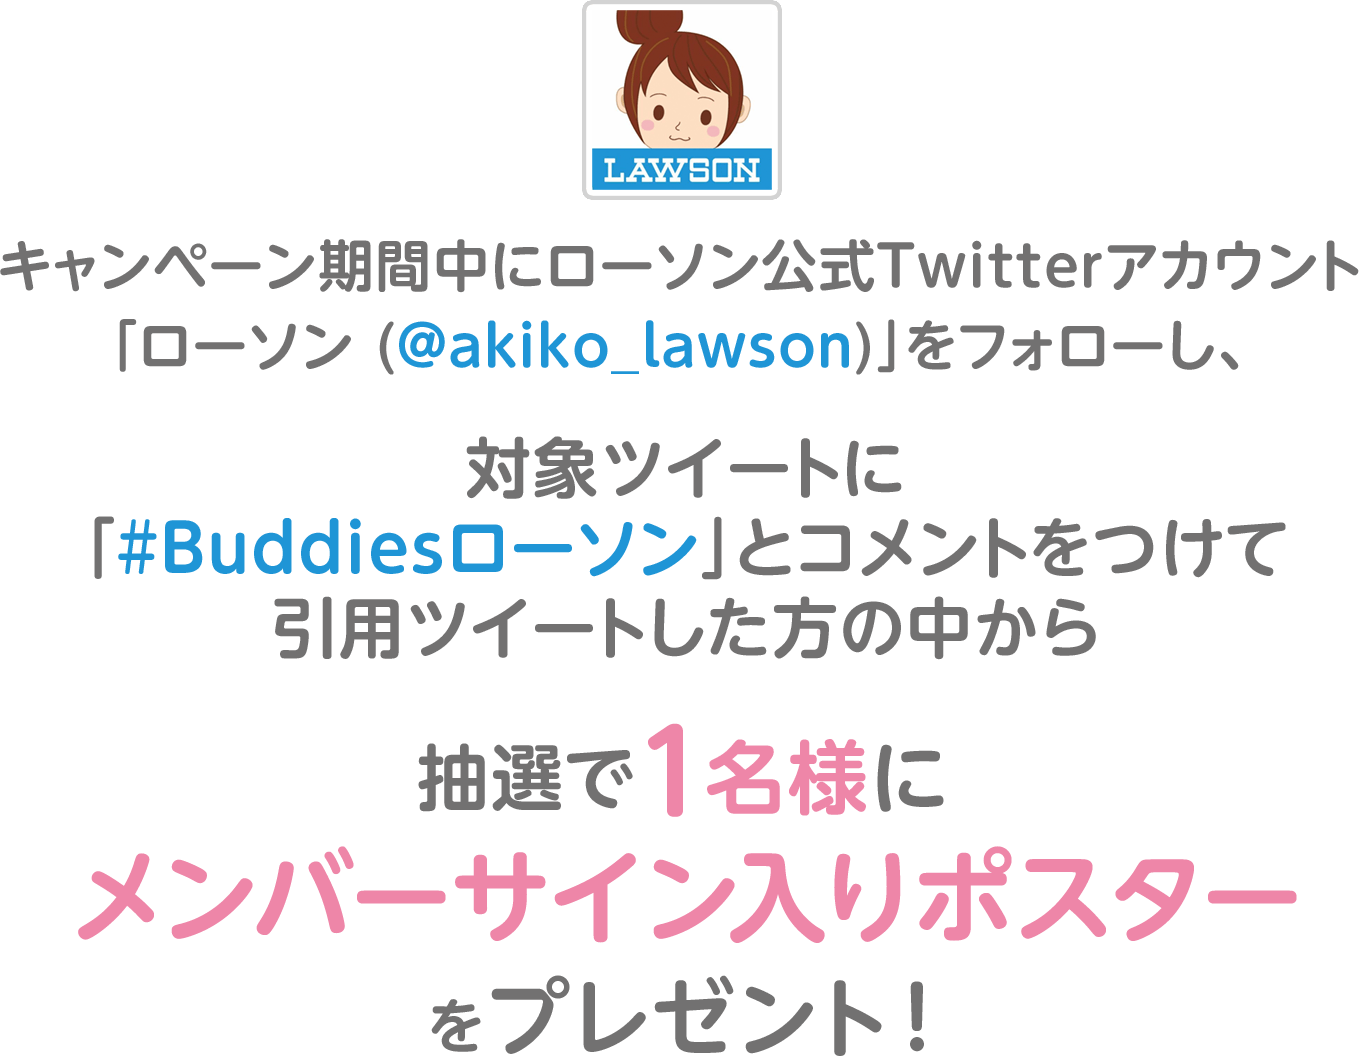 キャンペーン期間中にローソン公式Twitterアカウント「ローソン (@akiko_lawson)」をフォローし、対象ツイートに「#Buddiesローソン」とコメントをつけて引用ツイートした方の中から抽選で1名様にメンバーサイン入りポスターをプレゼント！